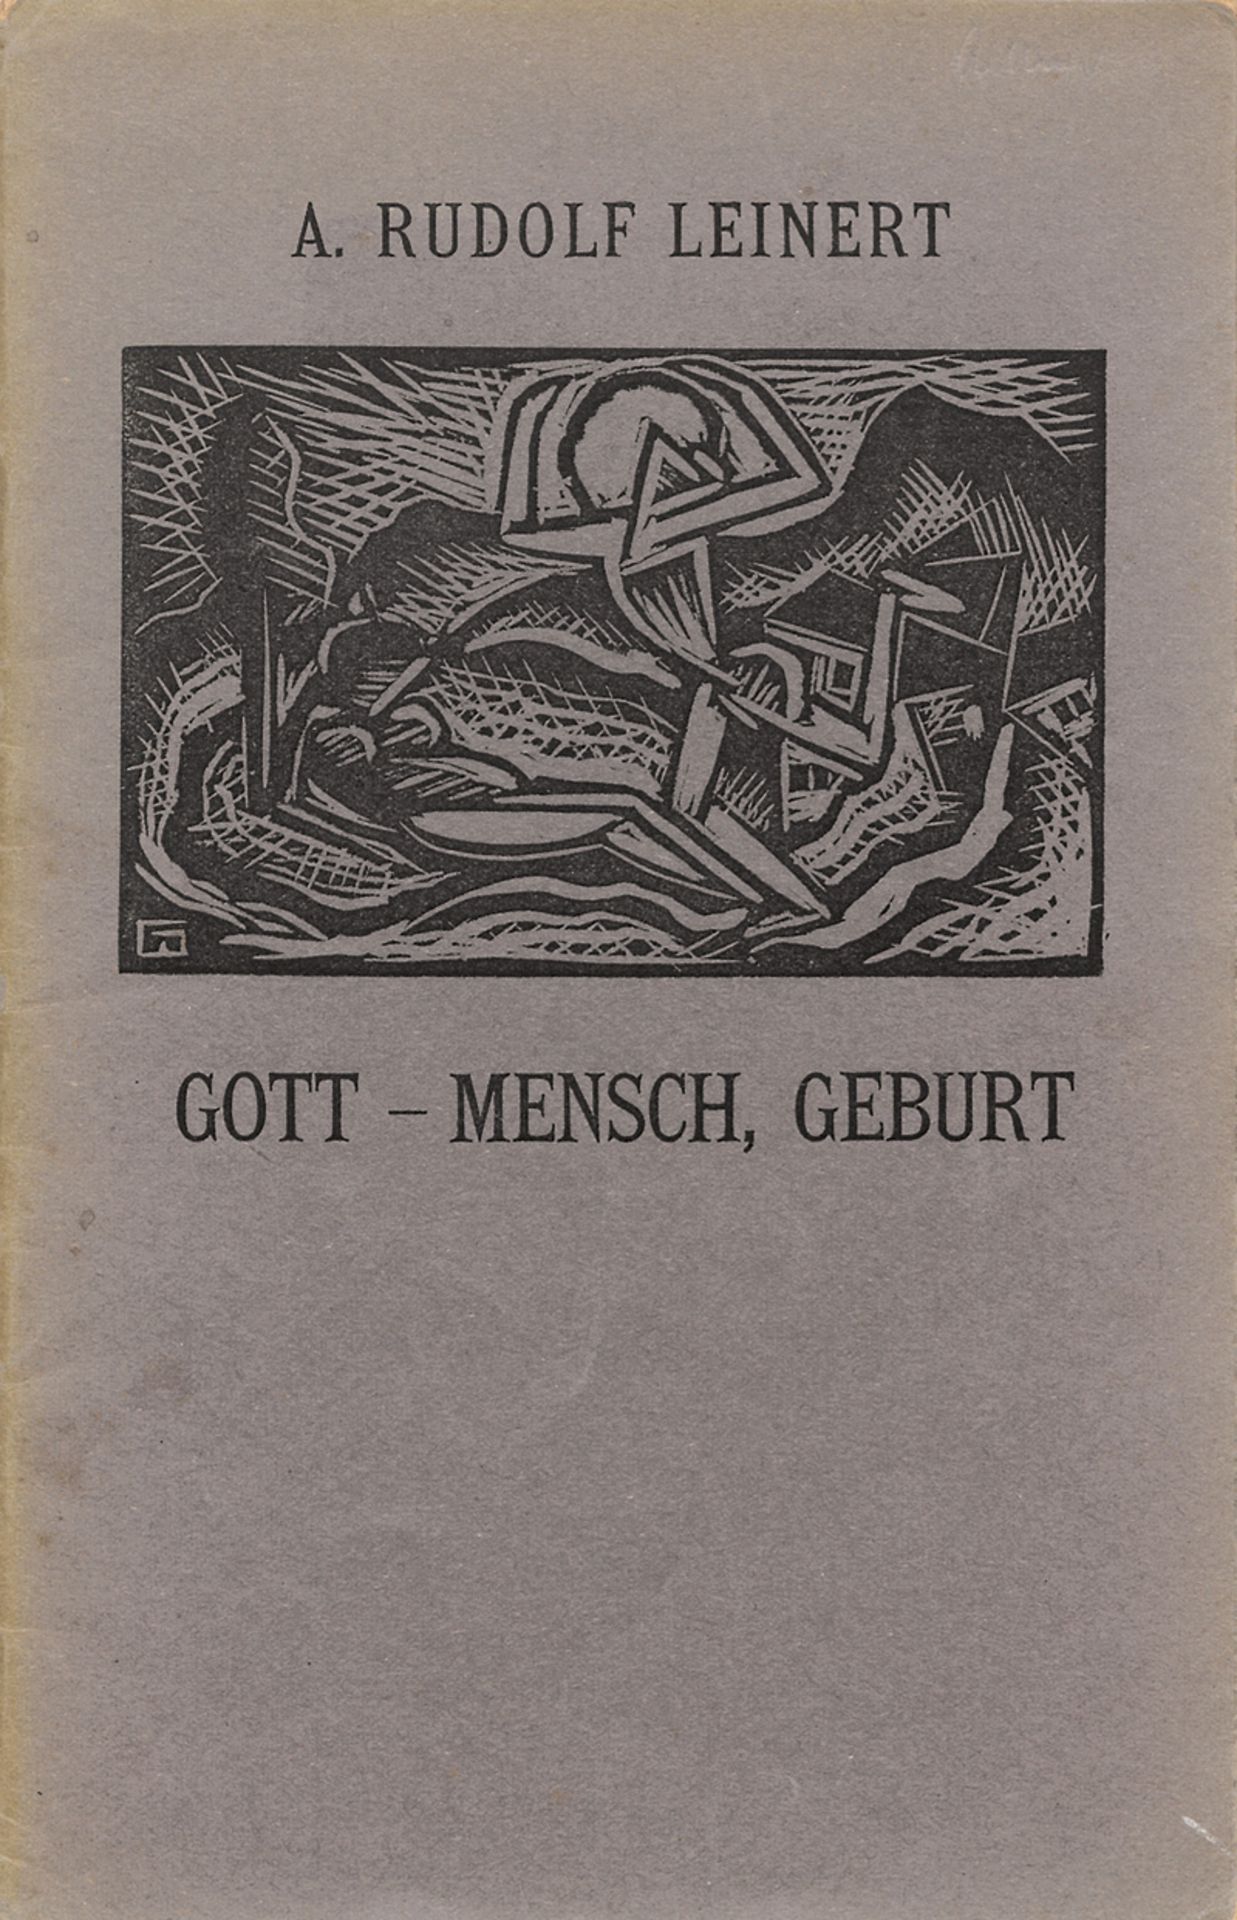 Leinert, A. Rudolf: Gott - Mensch Geburt